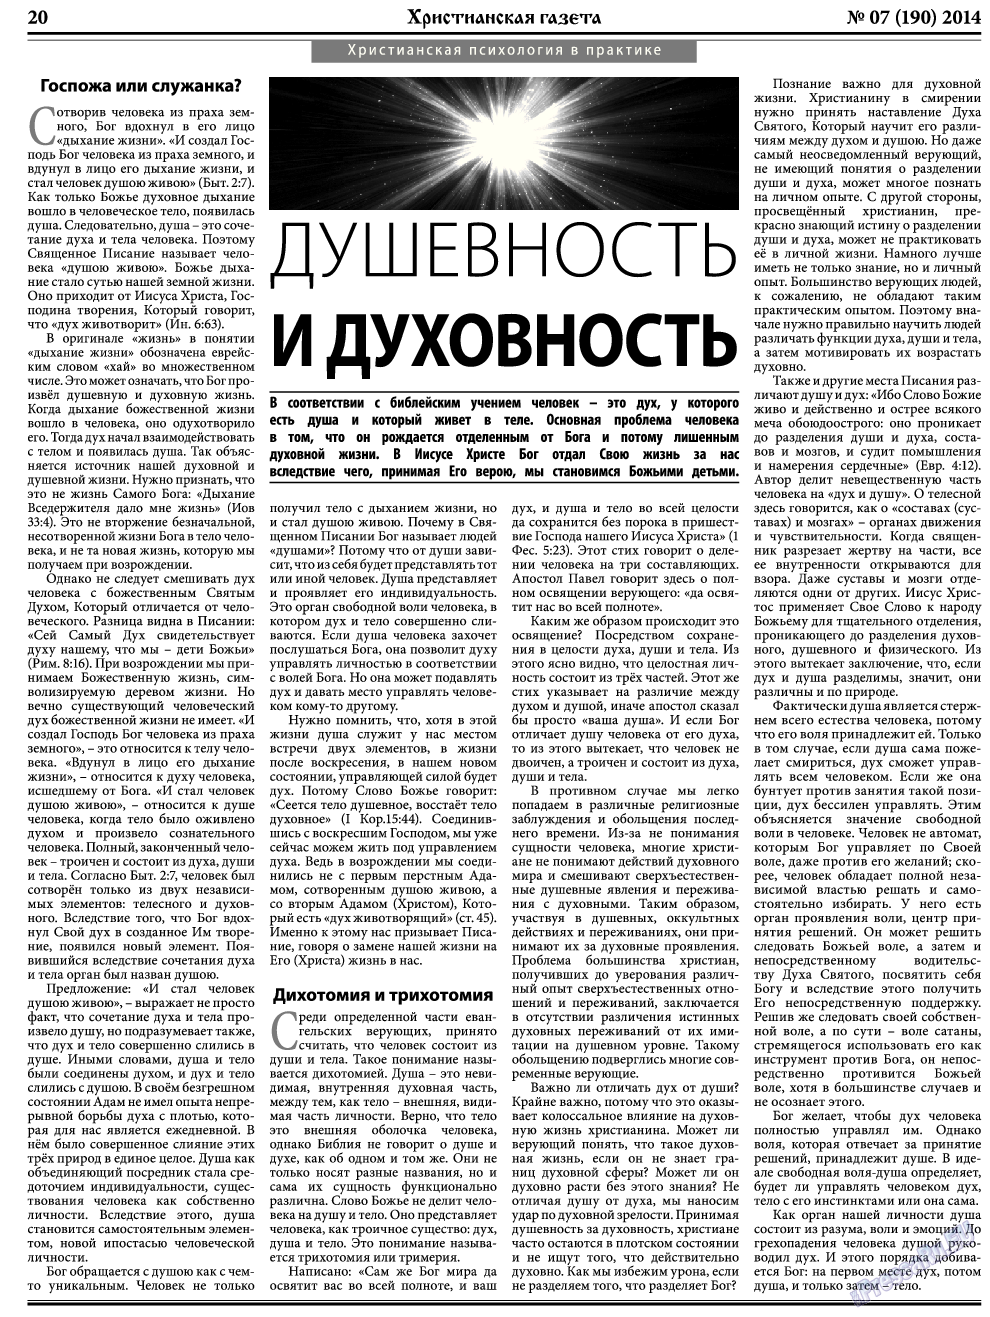 Христианская газета, газета. 2014 №7 стр.28